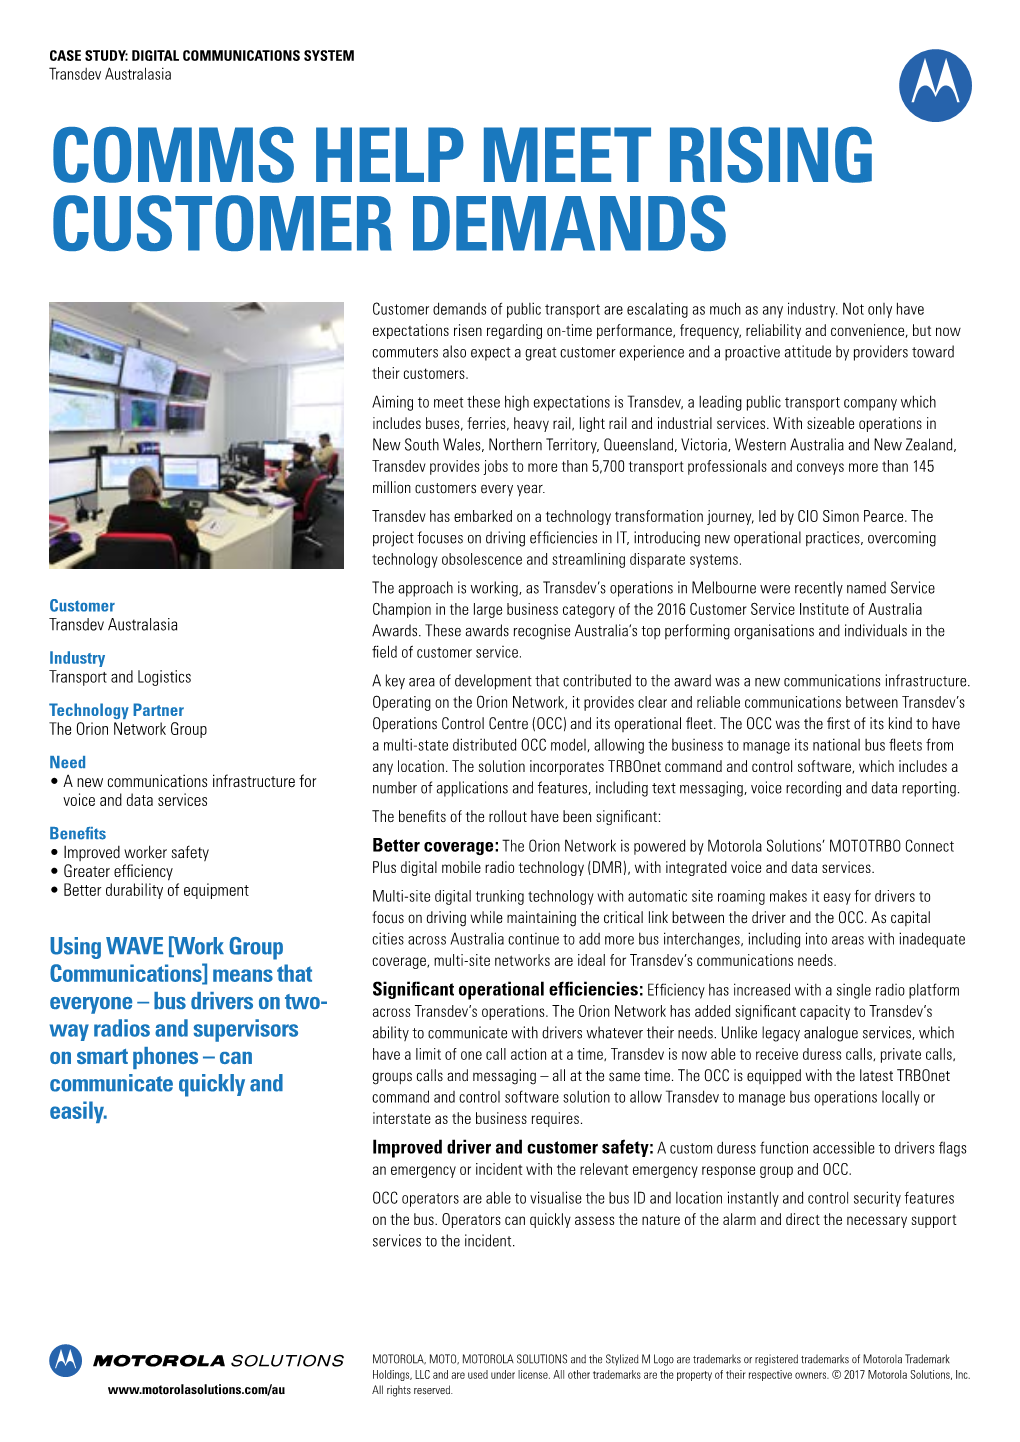 Comms Help Meet Rising Customer Demands